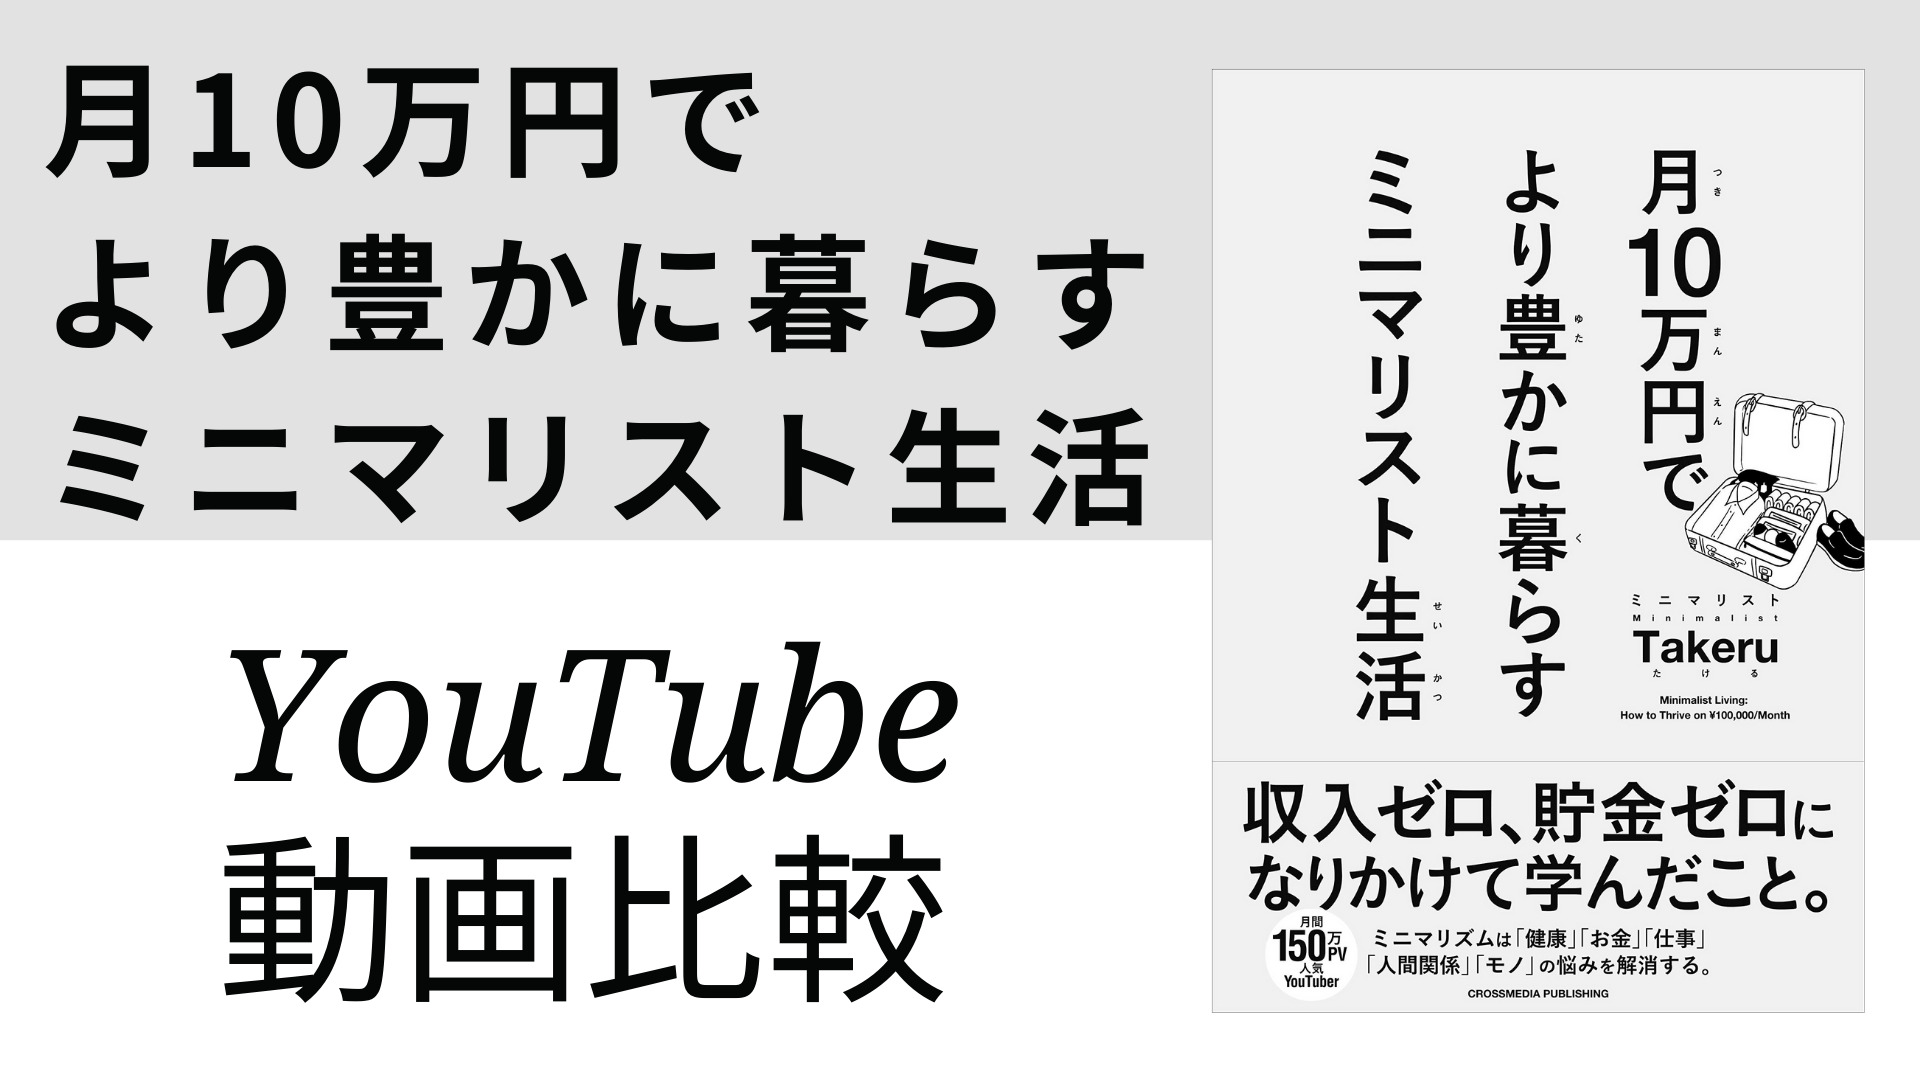 月10万円でより豊かに暮らす ミニマリスト生活 YouTube動画比較